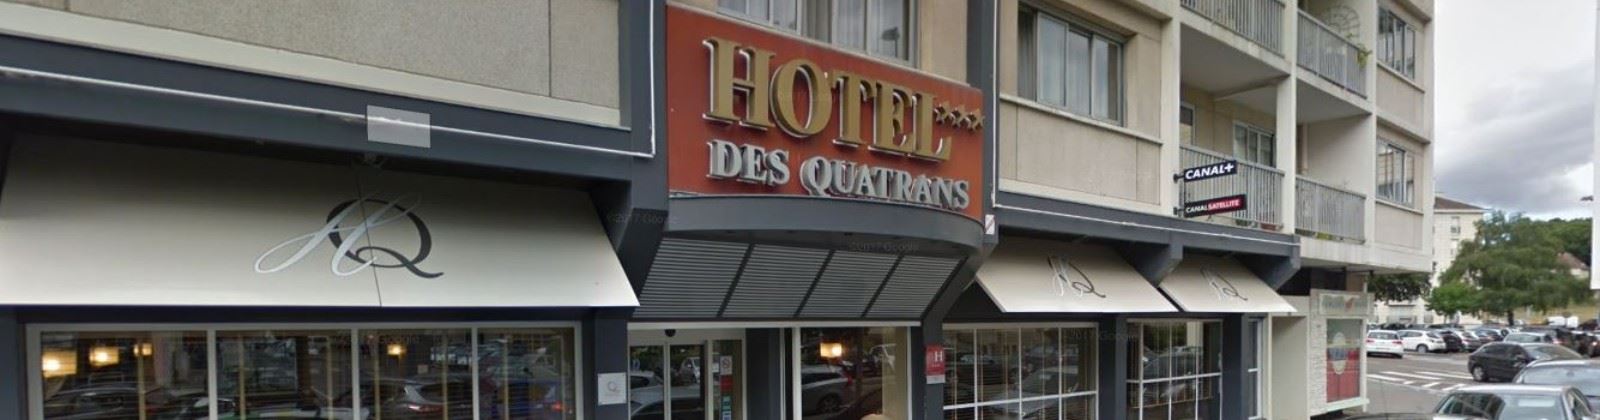 OLEVENE image - hotel-des-quatrans-olevene-restaurant-hotel-seminaire-restaurant-convention-meeting-